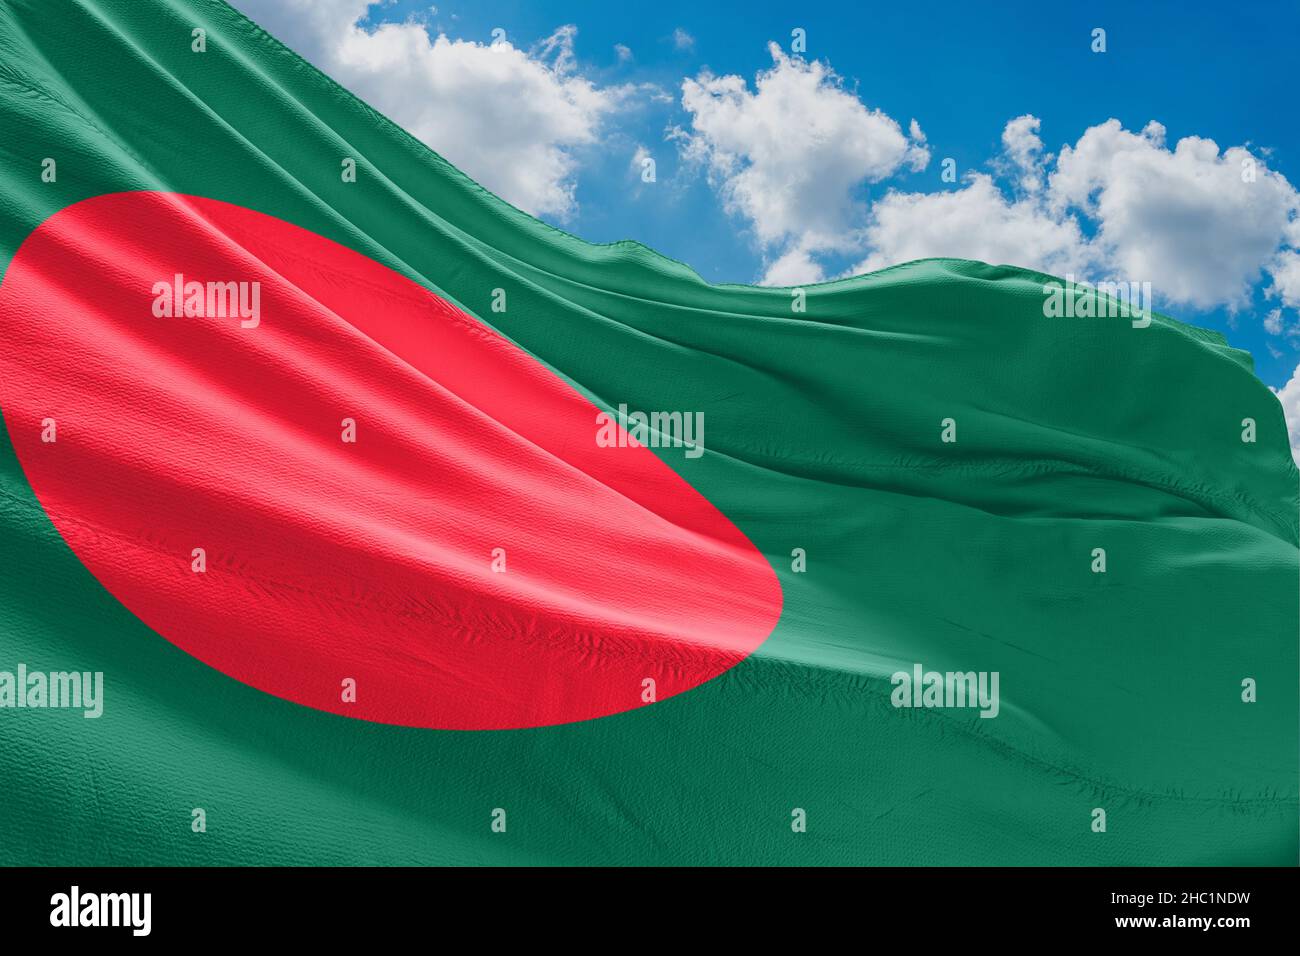 The national flag of Bangladesh Stock Photo